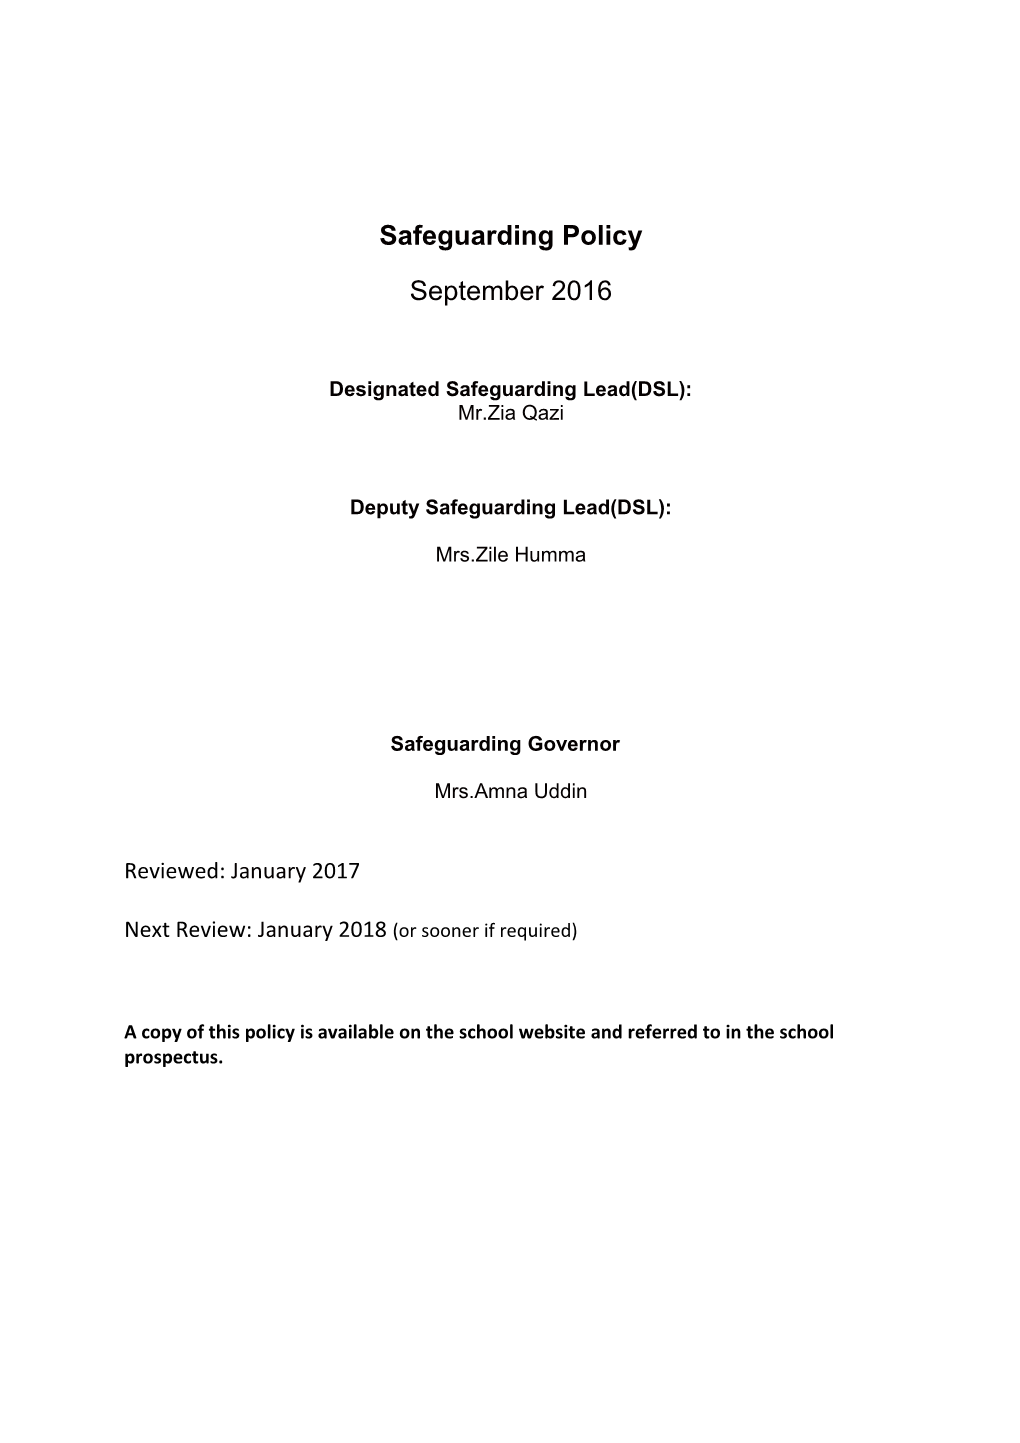 Designated Safeguarding Lead(DSL)